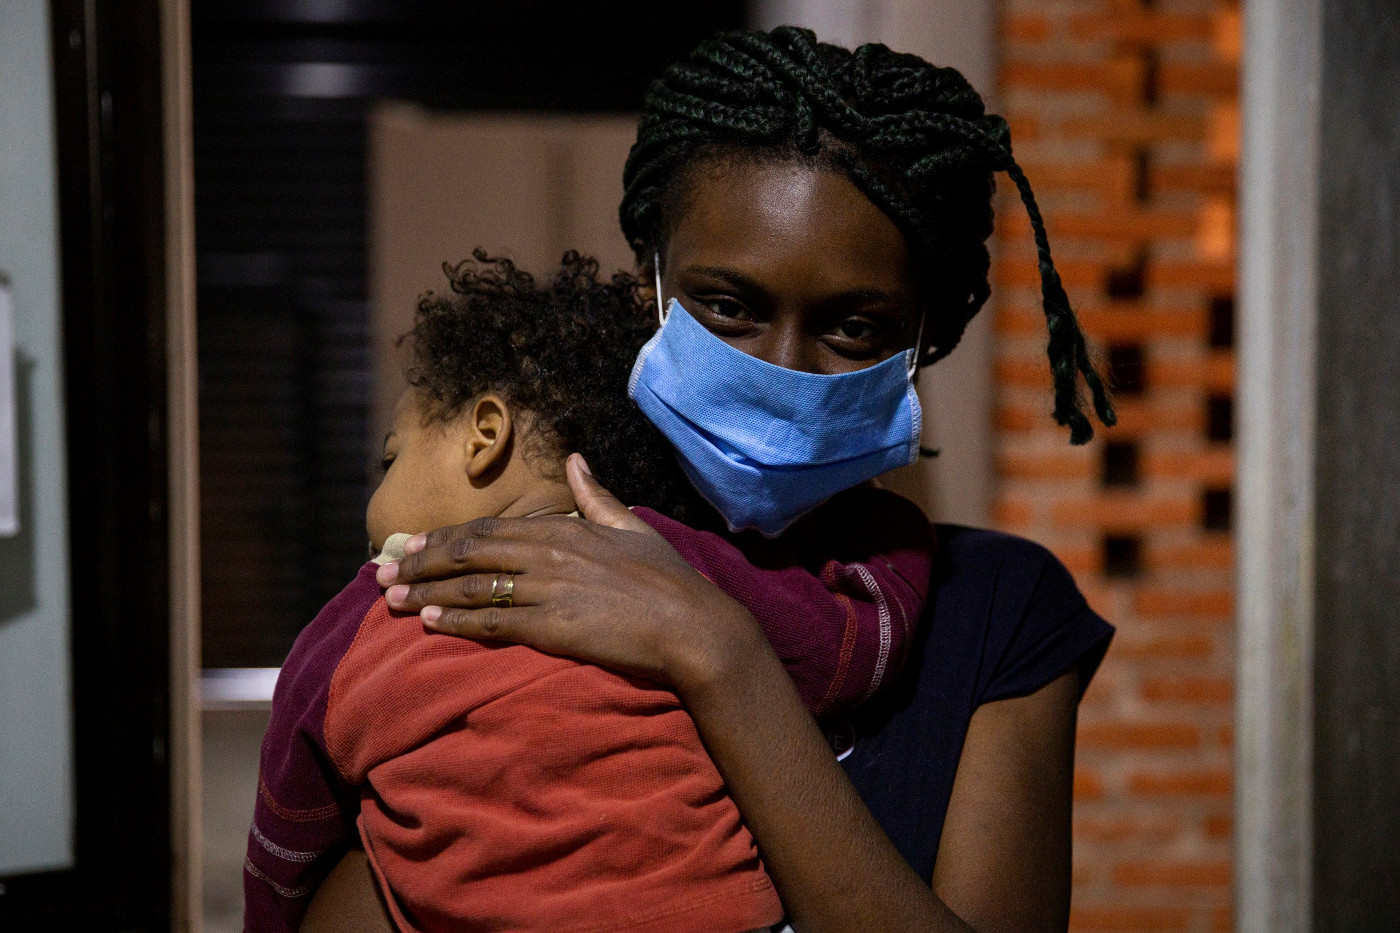 Eine Migrantin der Garifuna-Ethnie aus Guatemala geht mit ihrem Sohn zur Krankenstation der Herberge "Casa Mambré" in Mexiko-Stadt. Wegen der Corona-Pandemie müssen sie zwei Wochen in Quarantäne bleiben. Foto: Adveniat/Hans-Máximo Musielik